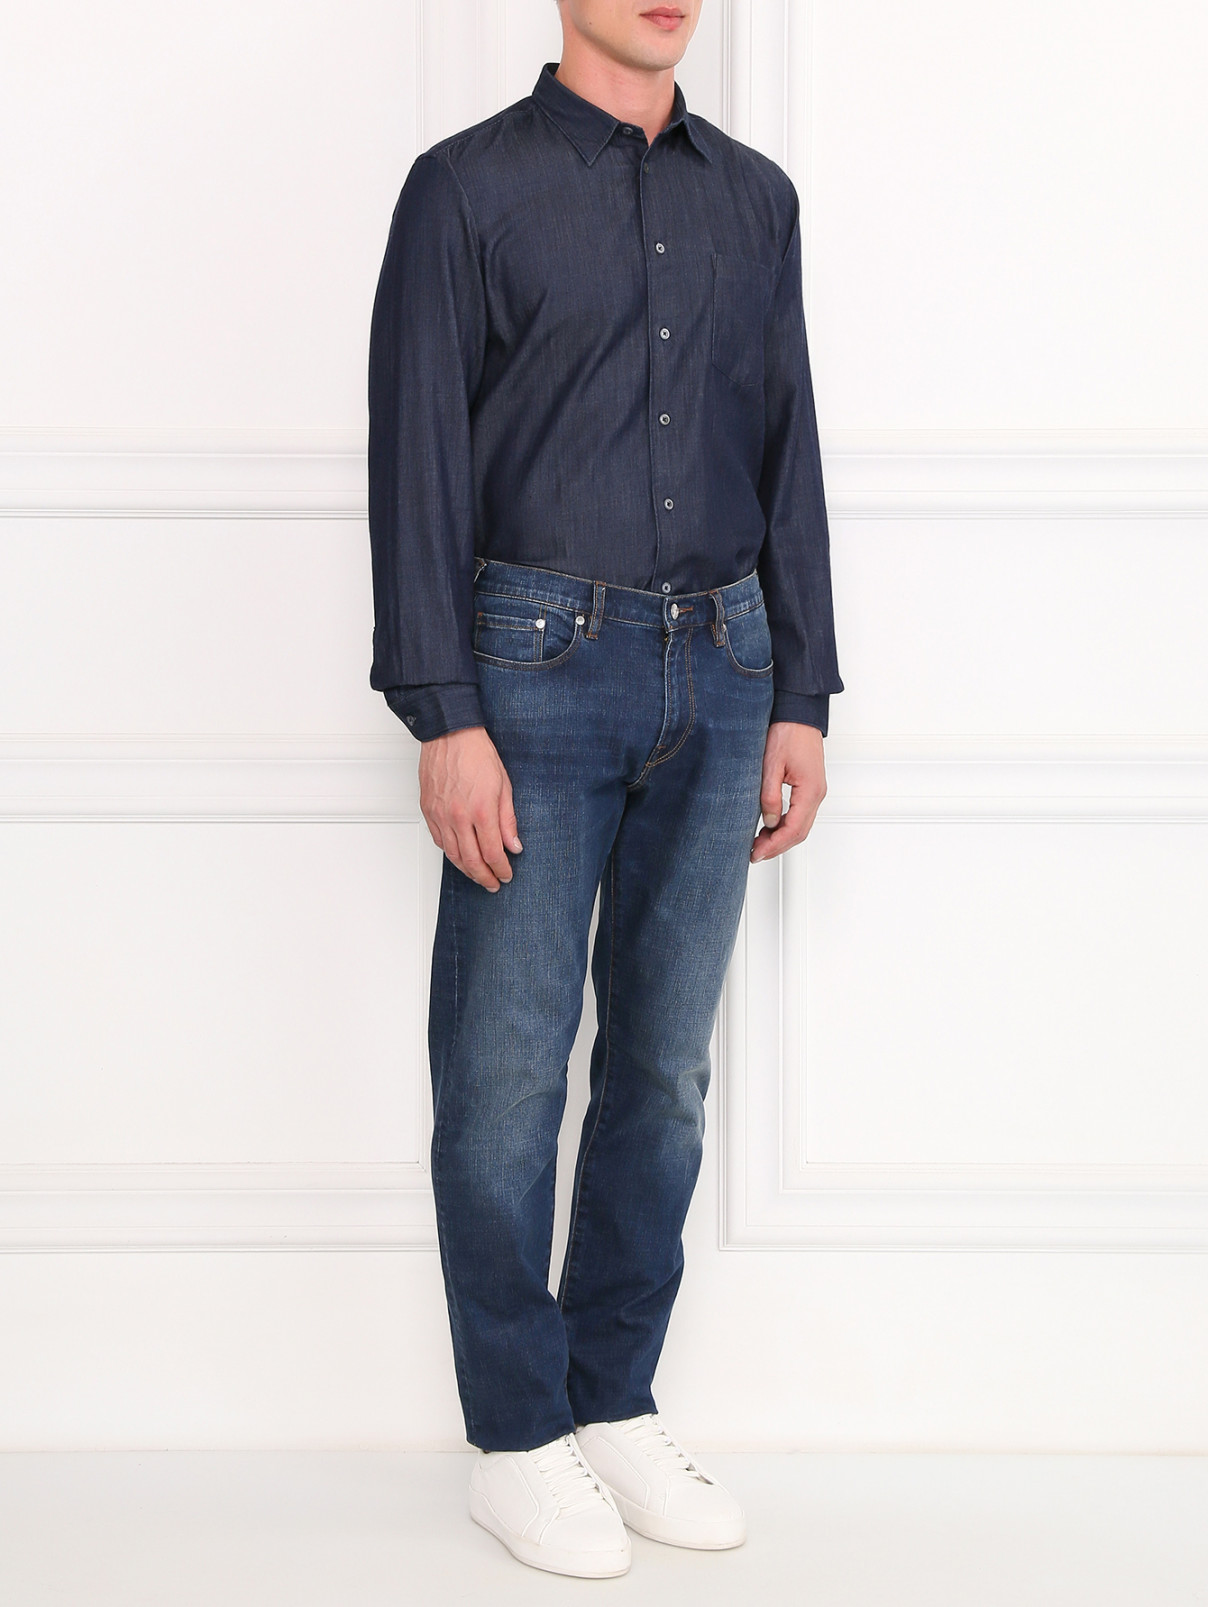 Рубашка из хлопка с нагрудным карманом Paul Smith  –  Модель Общий вид  – Цвет:  Синий